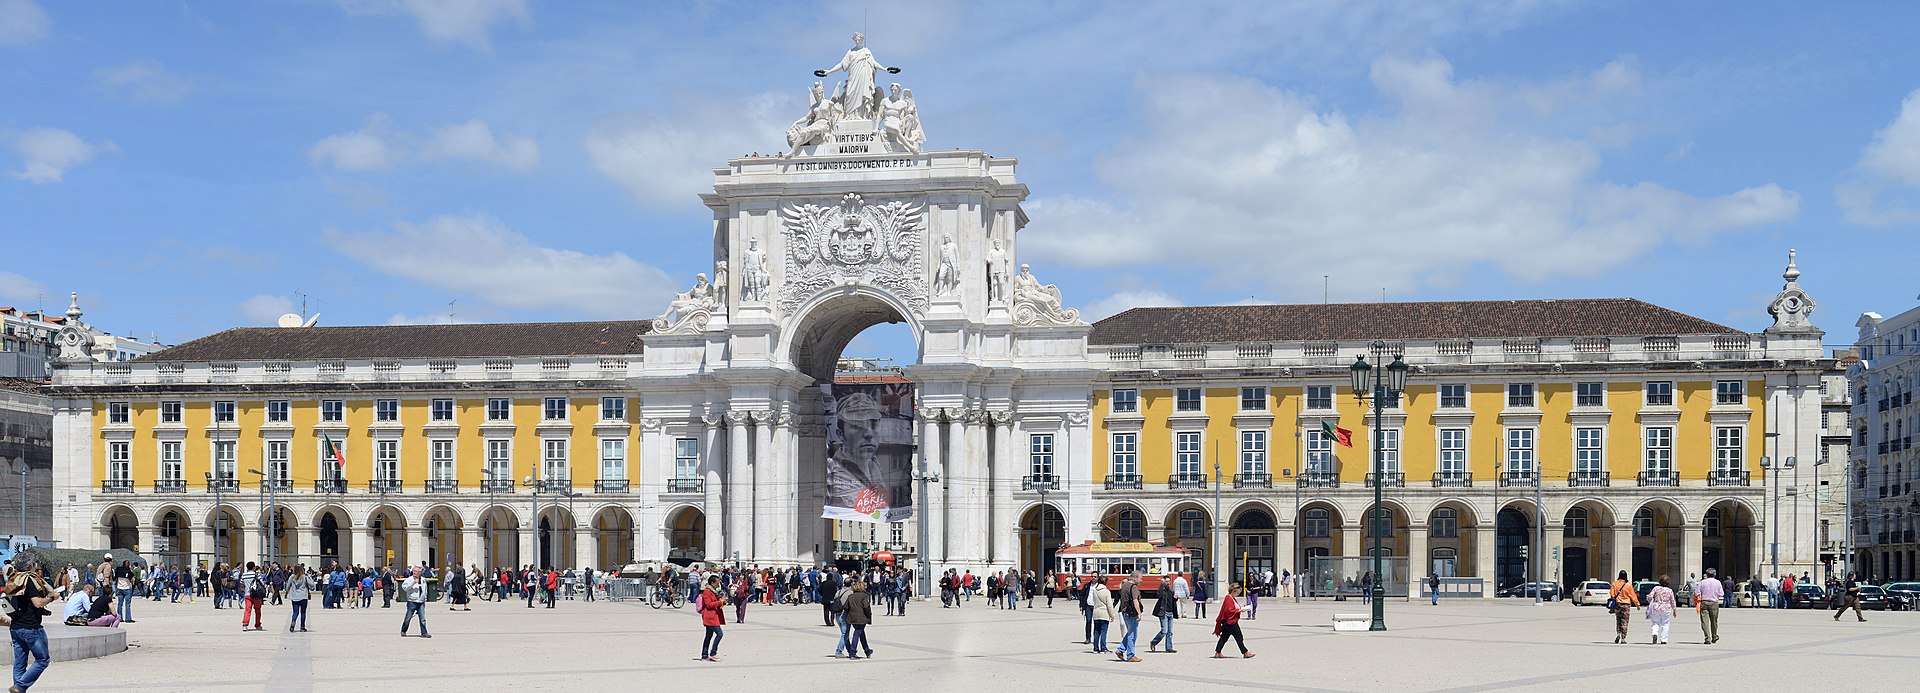 Lisboa April 2014-15a.jpg